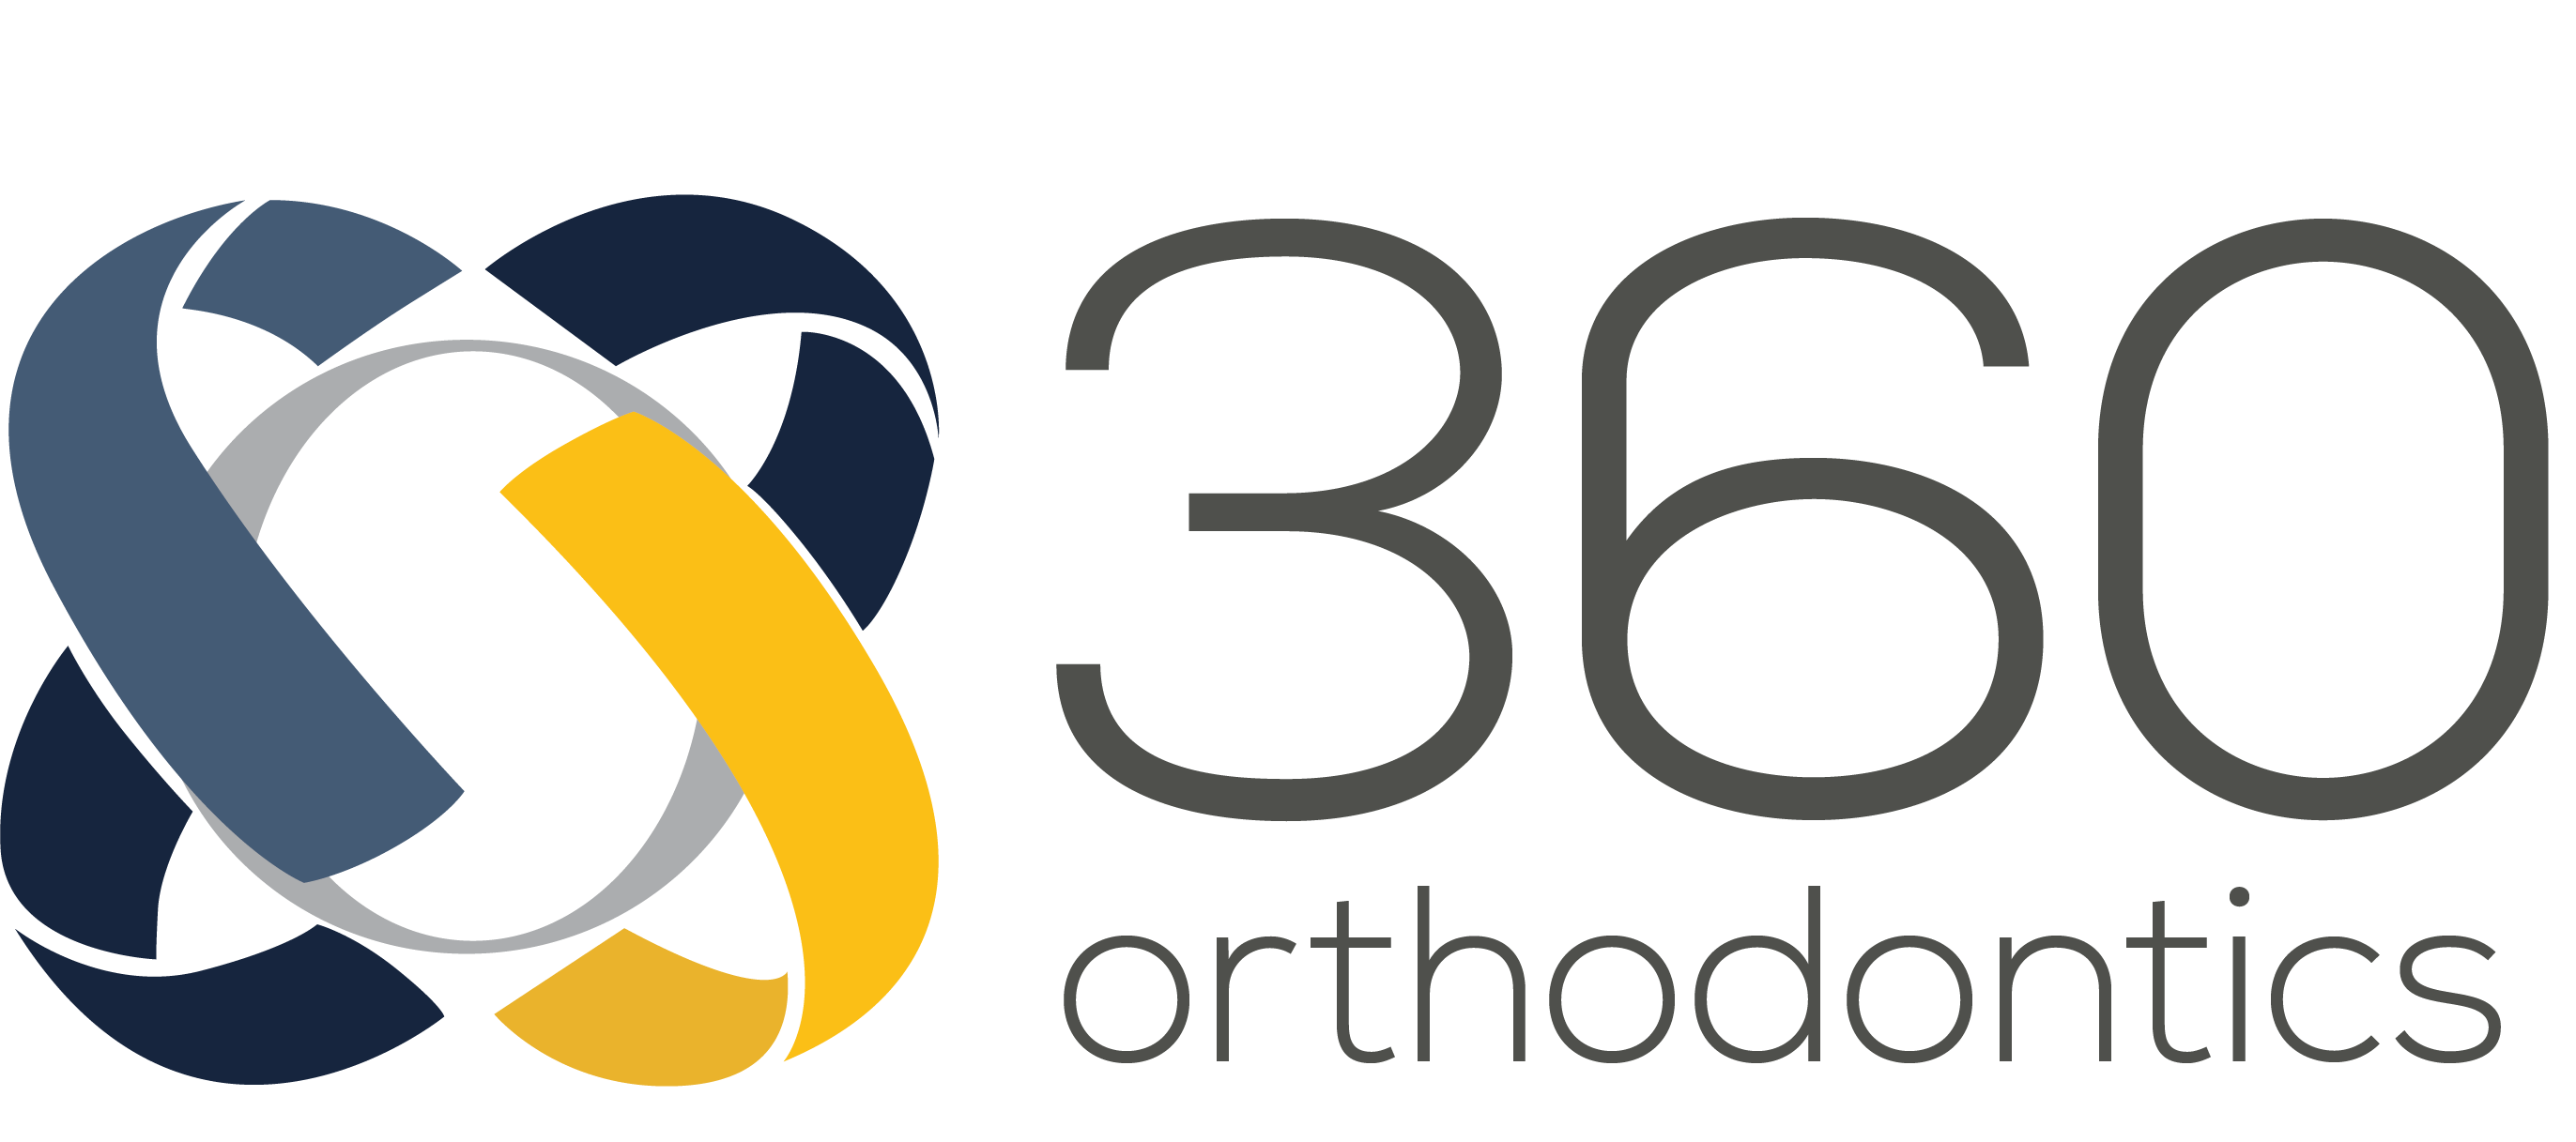 360 Orthodontics logo.